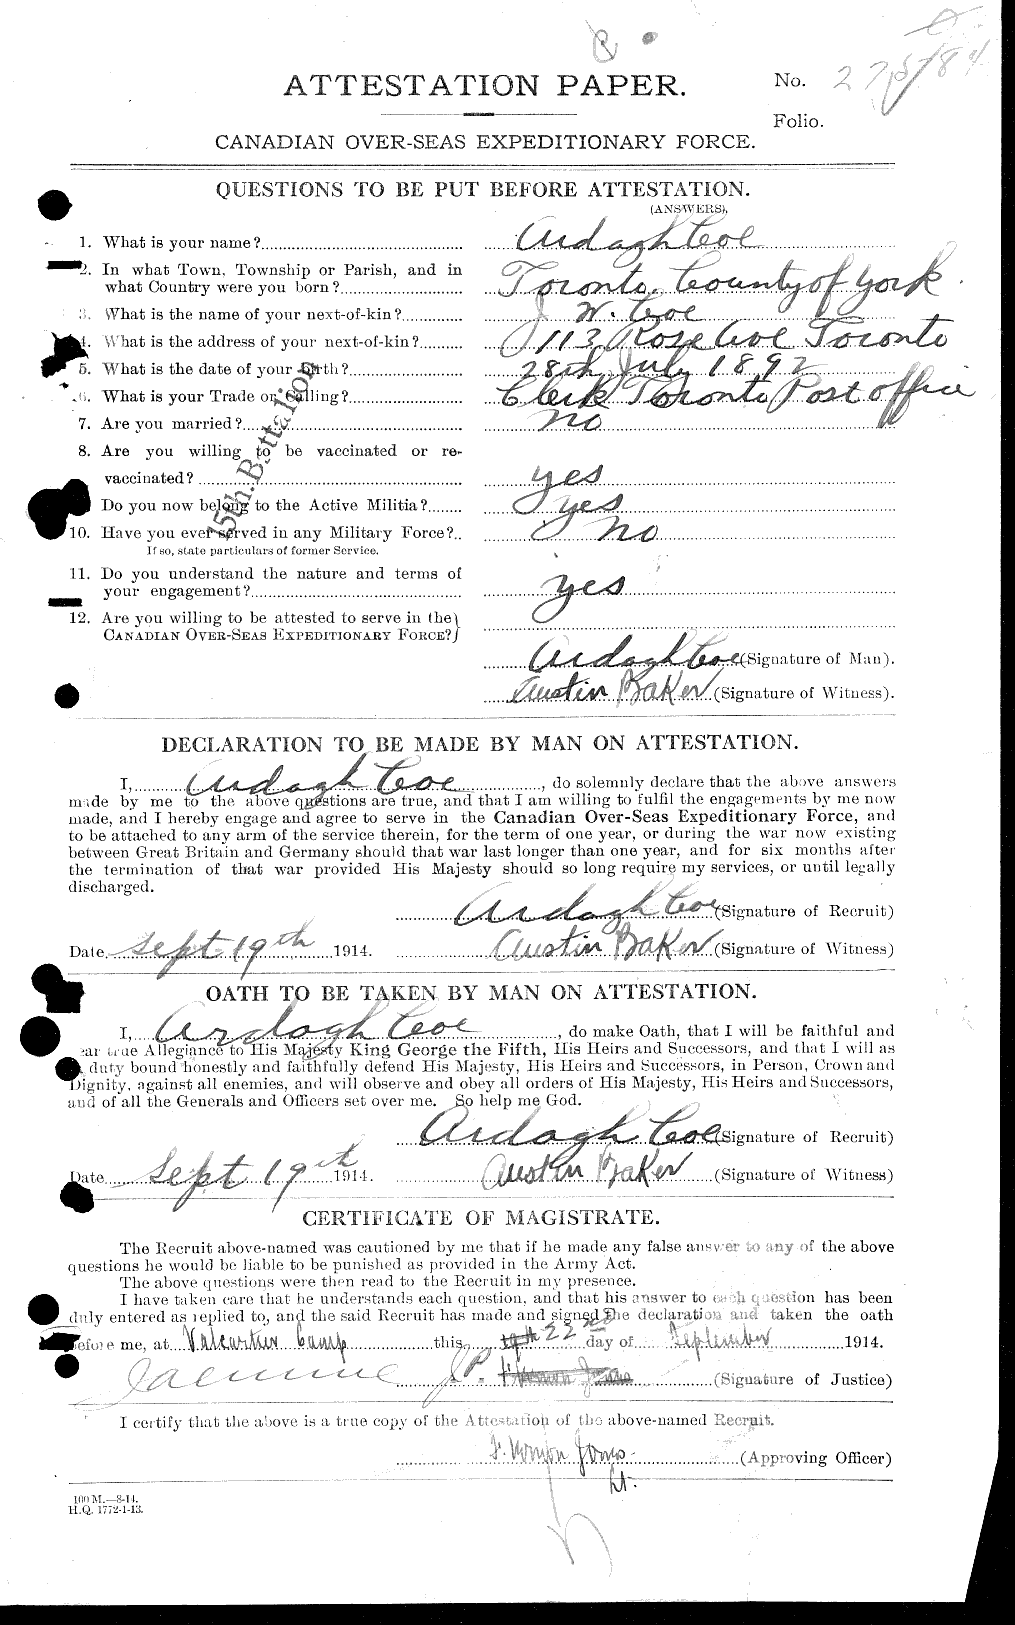 Dossiers du Personnel de la Première Guerre mondiale - CEC 026937a